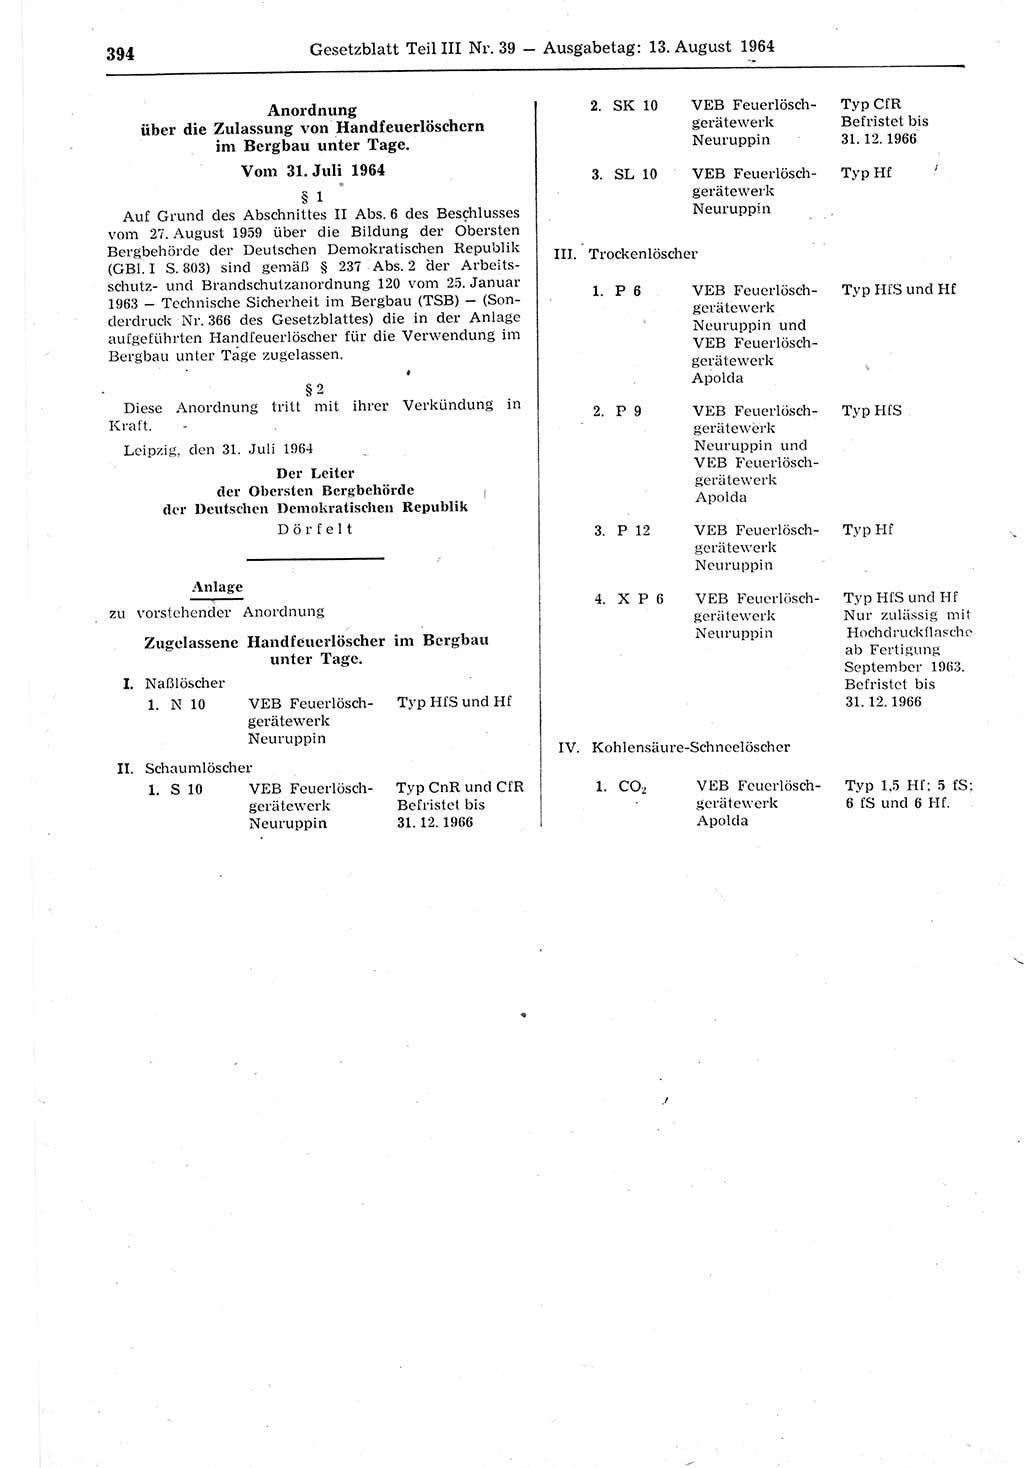 Gesetzblatt (GBl.) der Deutschen Demokratischen Republik (DDR) Teil ⅠⅠⅠ 1964, Seite 394 (GBl. DDR ⅠⅠⅠ 1964, S. 394)